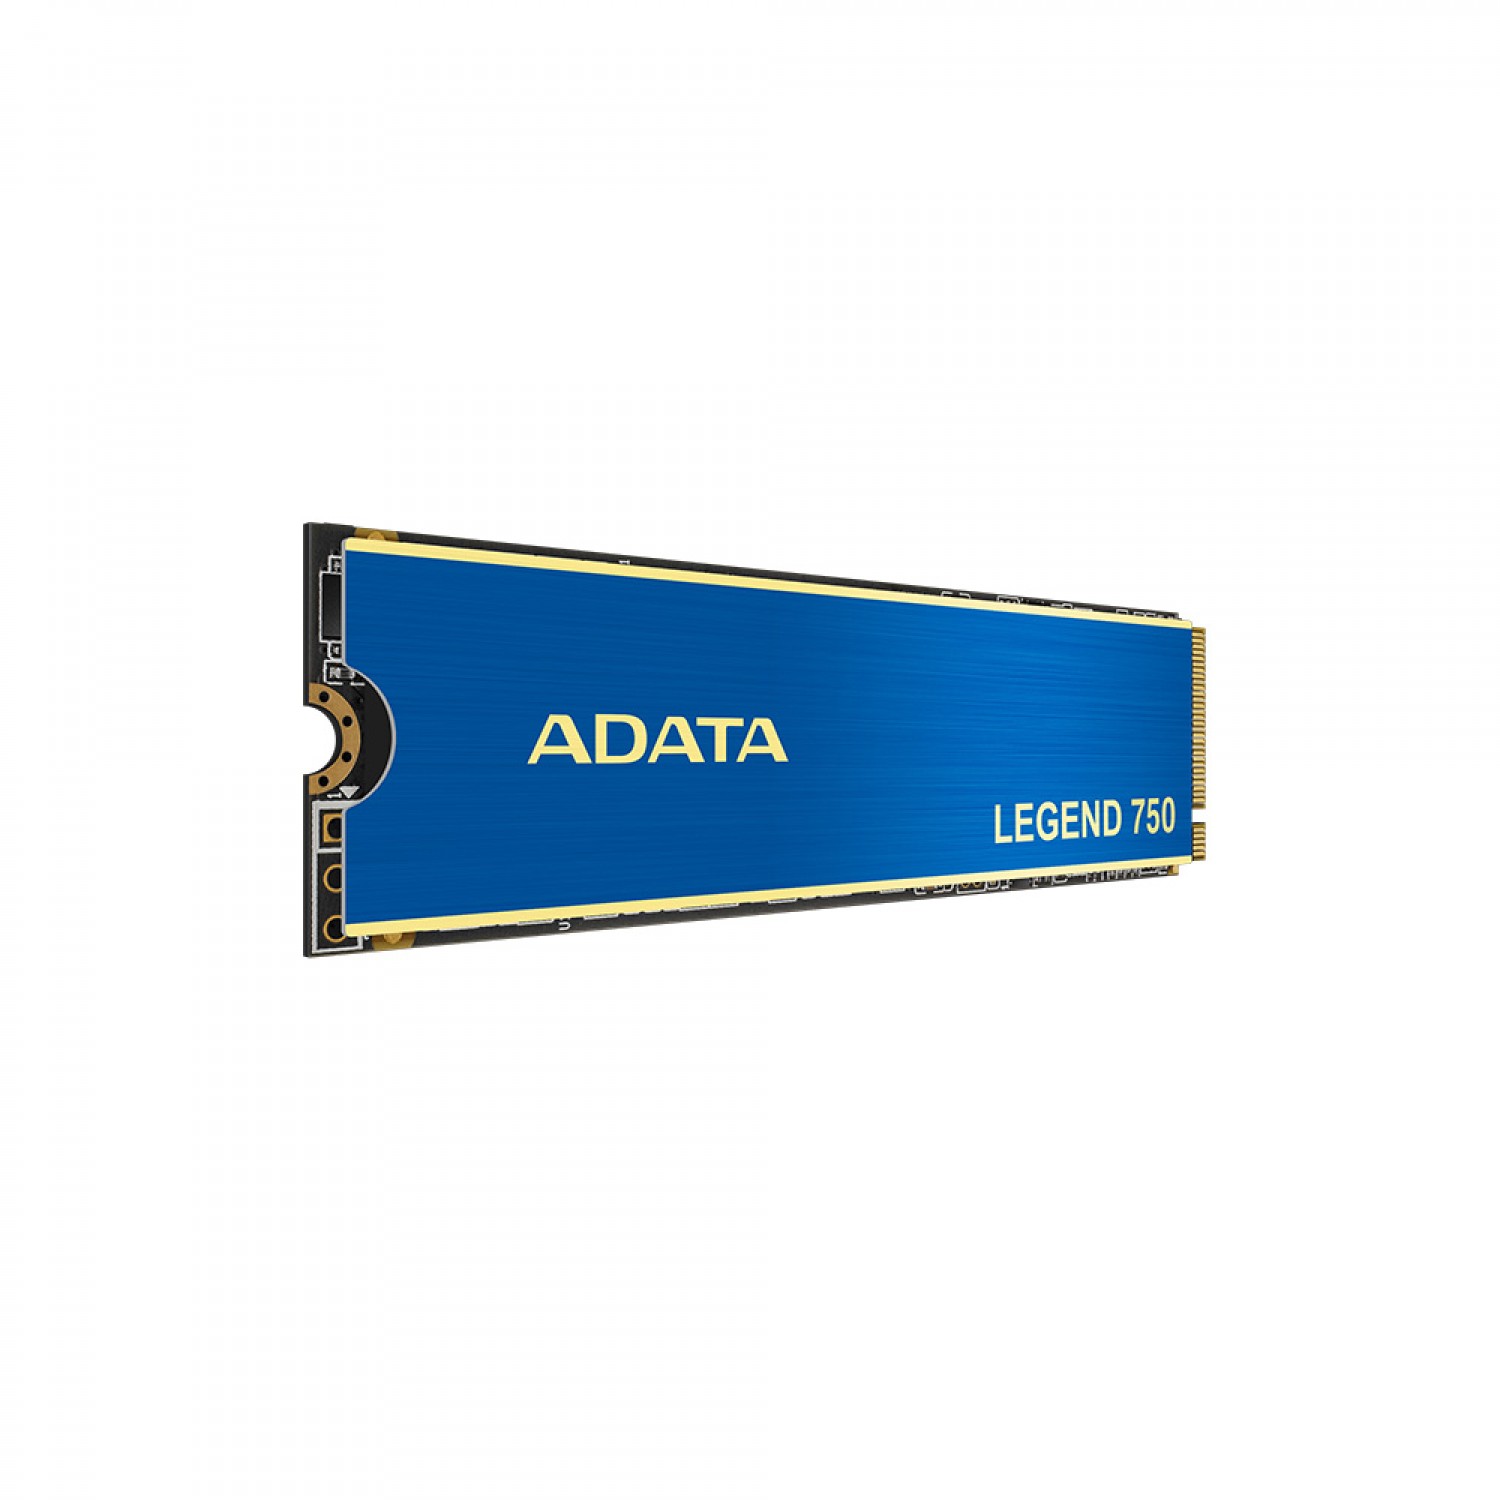 حافظه اس اس دی ADATA Legend 750 1TB-5